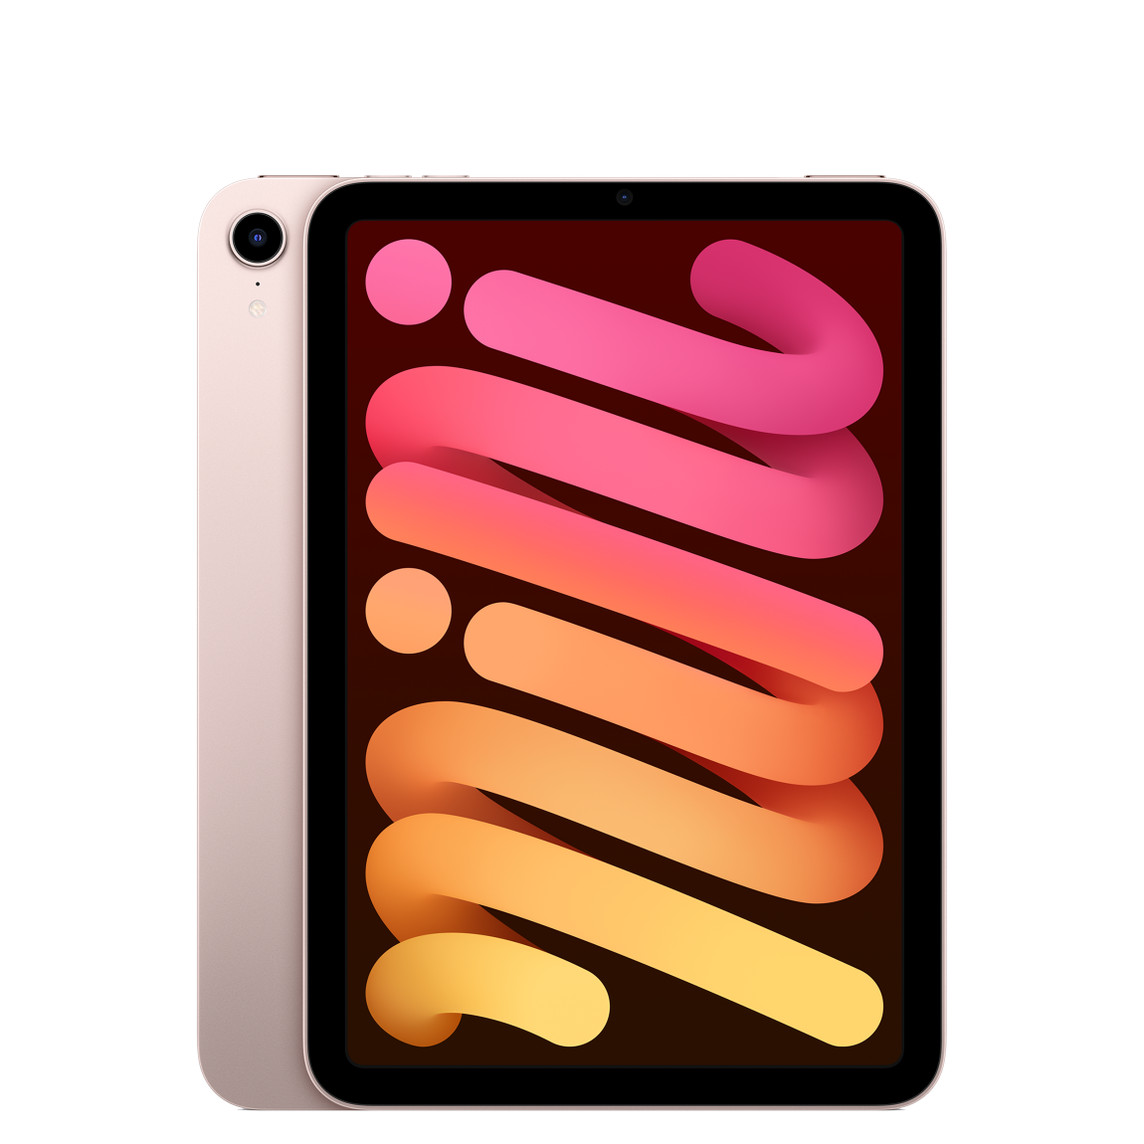 iPad mini, back exterior, single-lens camera top left, pink finish, front exterior, all-screen design, black display bezel